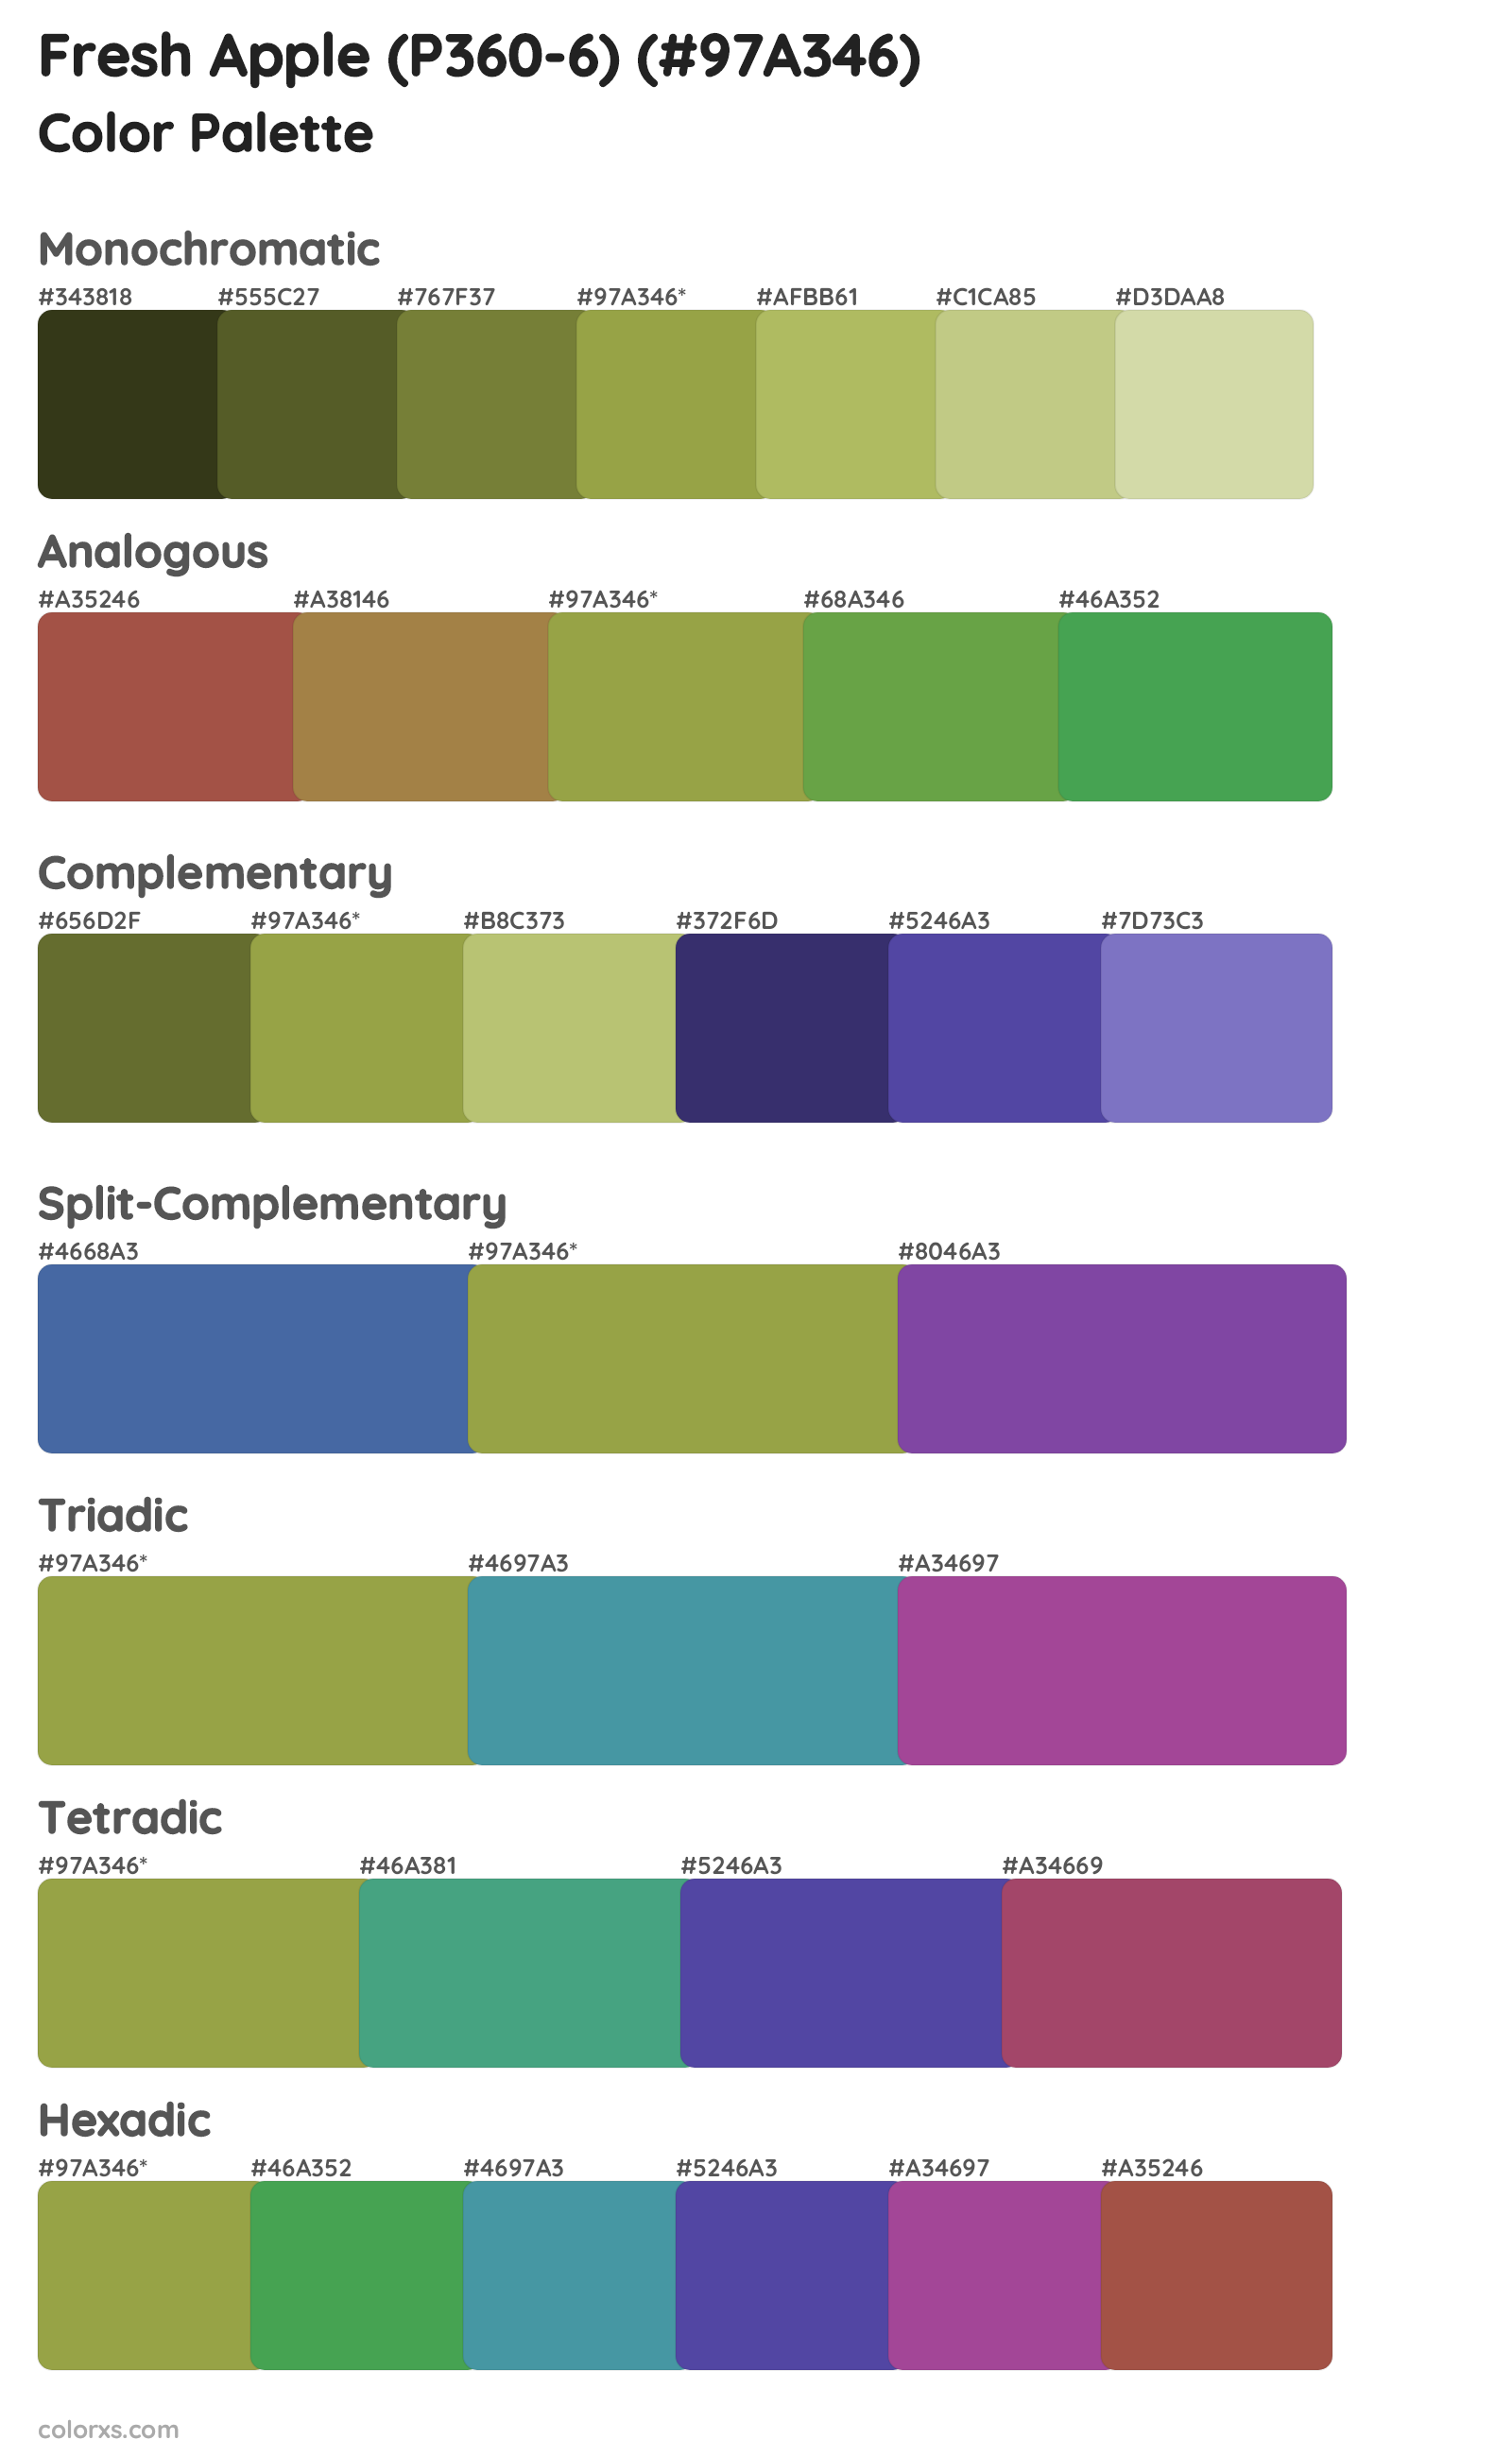 Fresh Apple (P360-6) Color Scheme Palettes